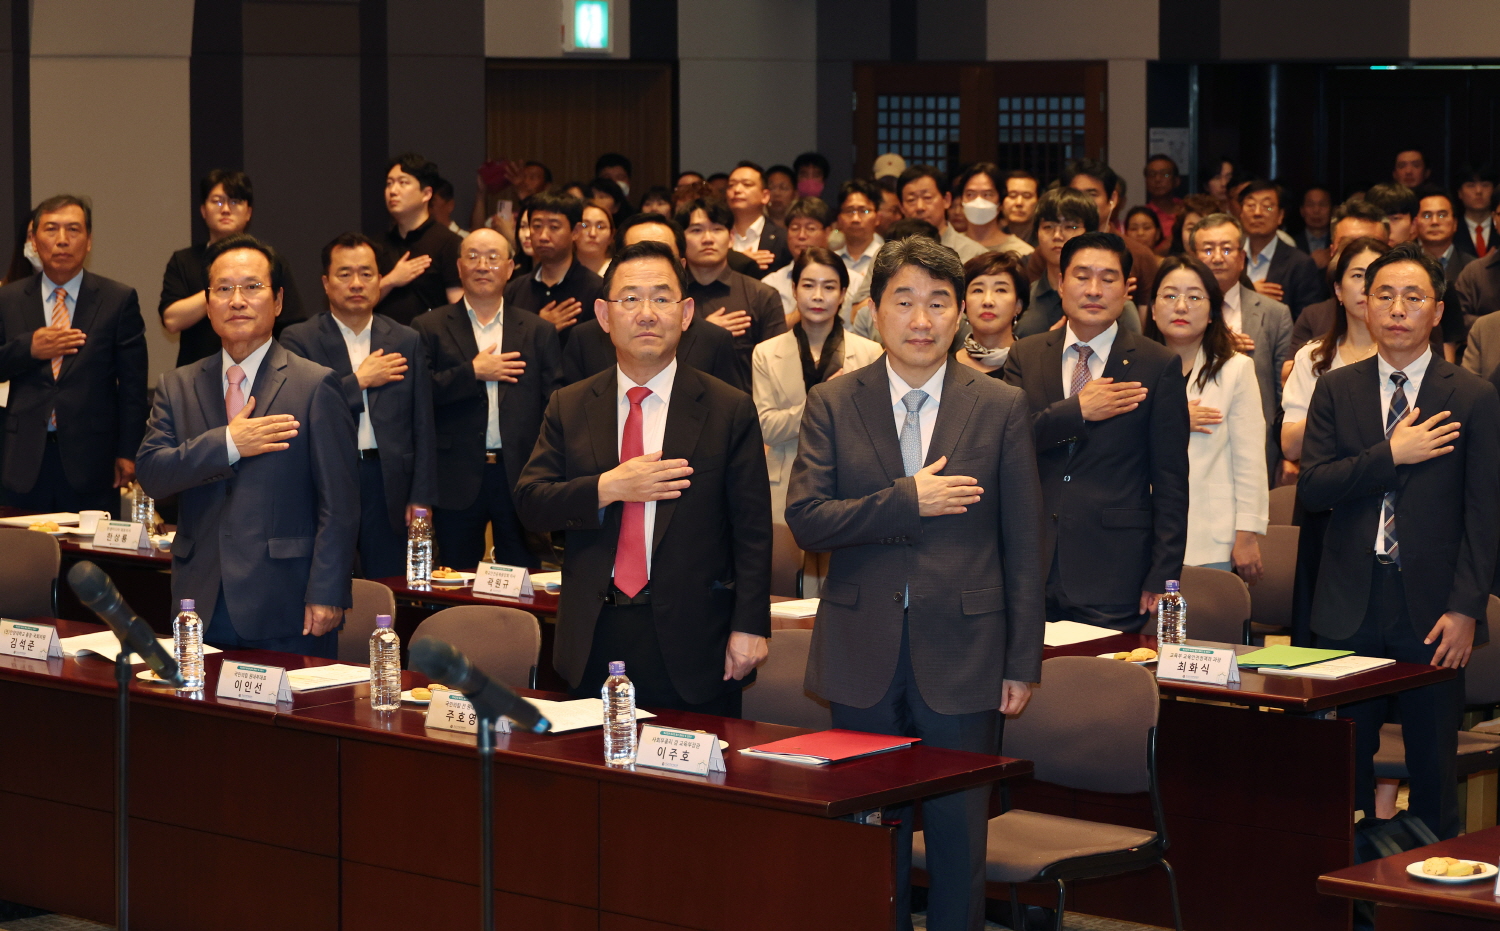 이주호 부총리 겸 교육부장관은 9월 18일(월), 한국프레스센터에서 열리는 「학교안전 대국민 홍보 캠페인 및 선포식」에 참석했다.